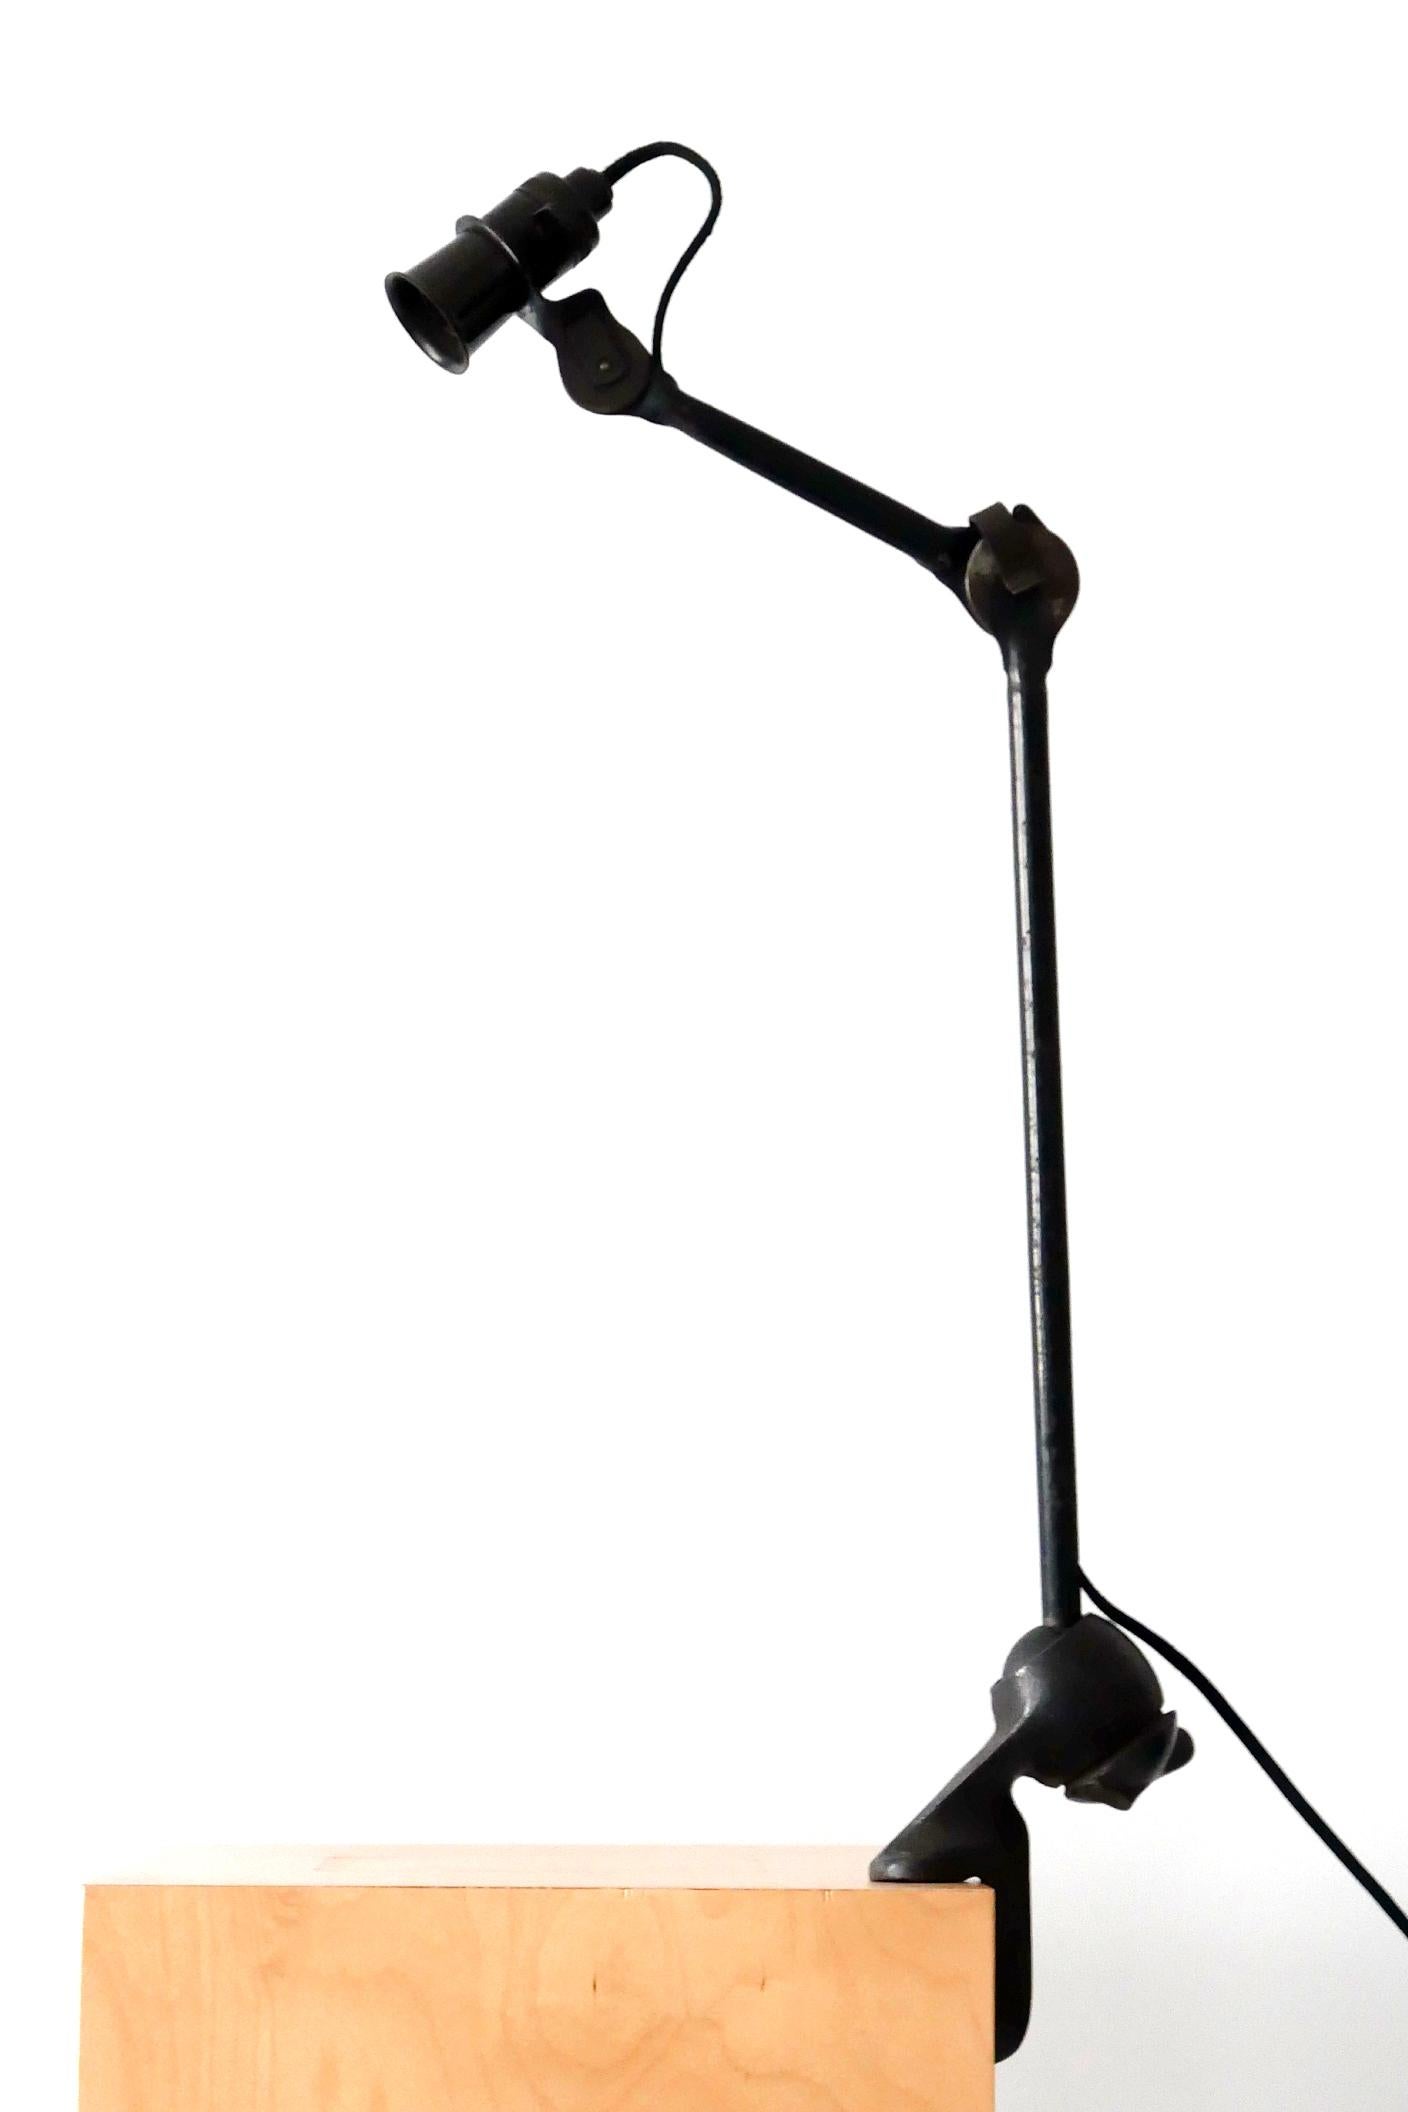 Enameled Modernist Task Light or Clamp Table Lamp by Bernard-Albin Gras for Gras, 1920s For Sale